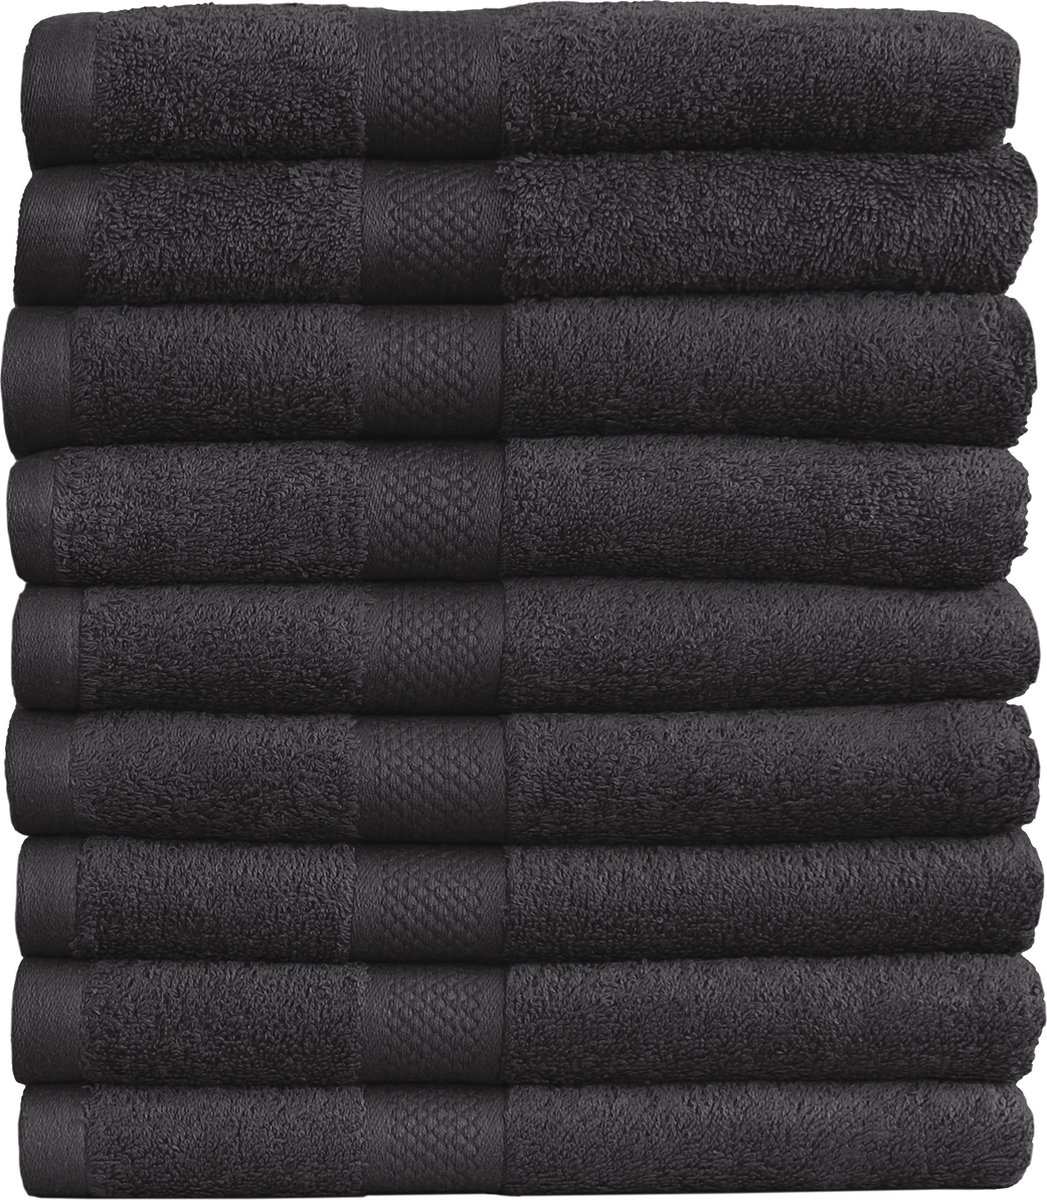 Handdoek Hotel Collectie - 9 stuks - 50x100 - zwart